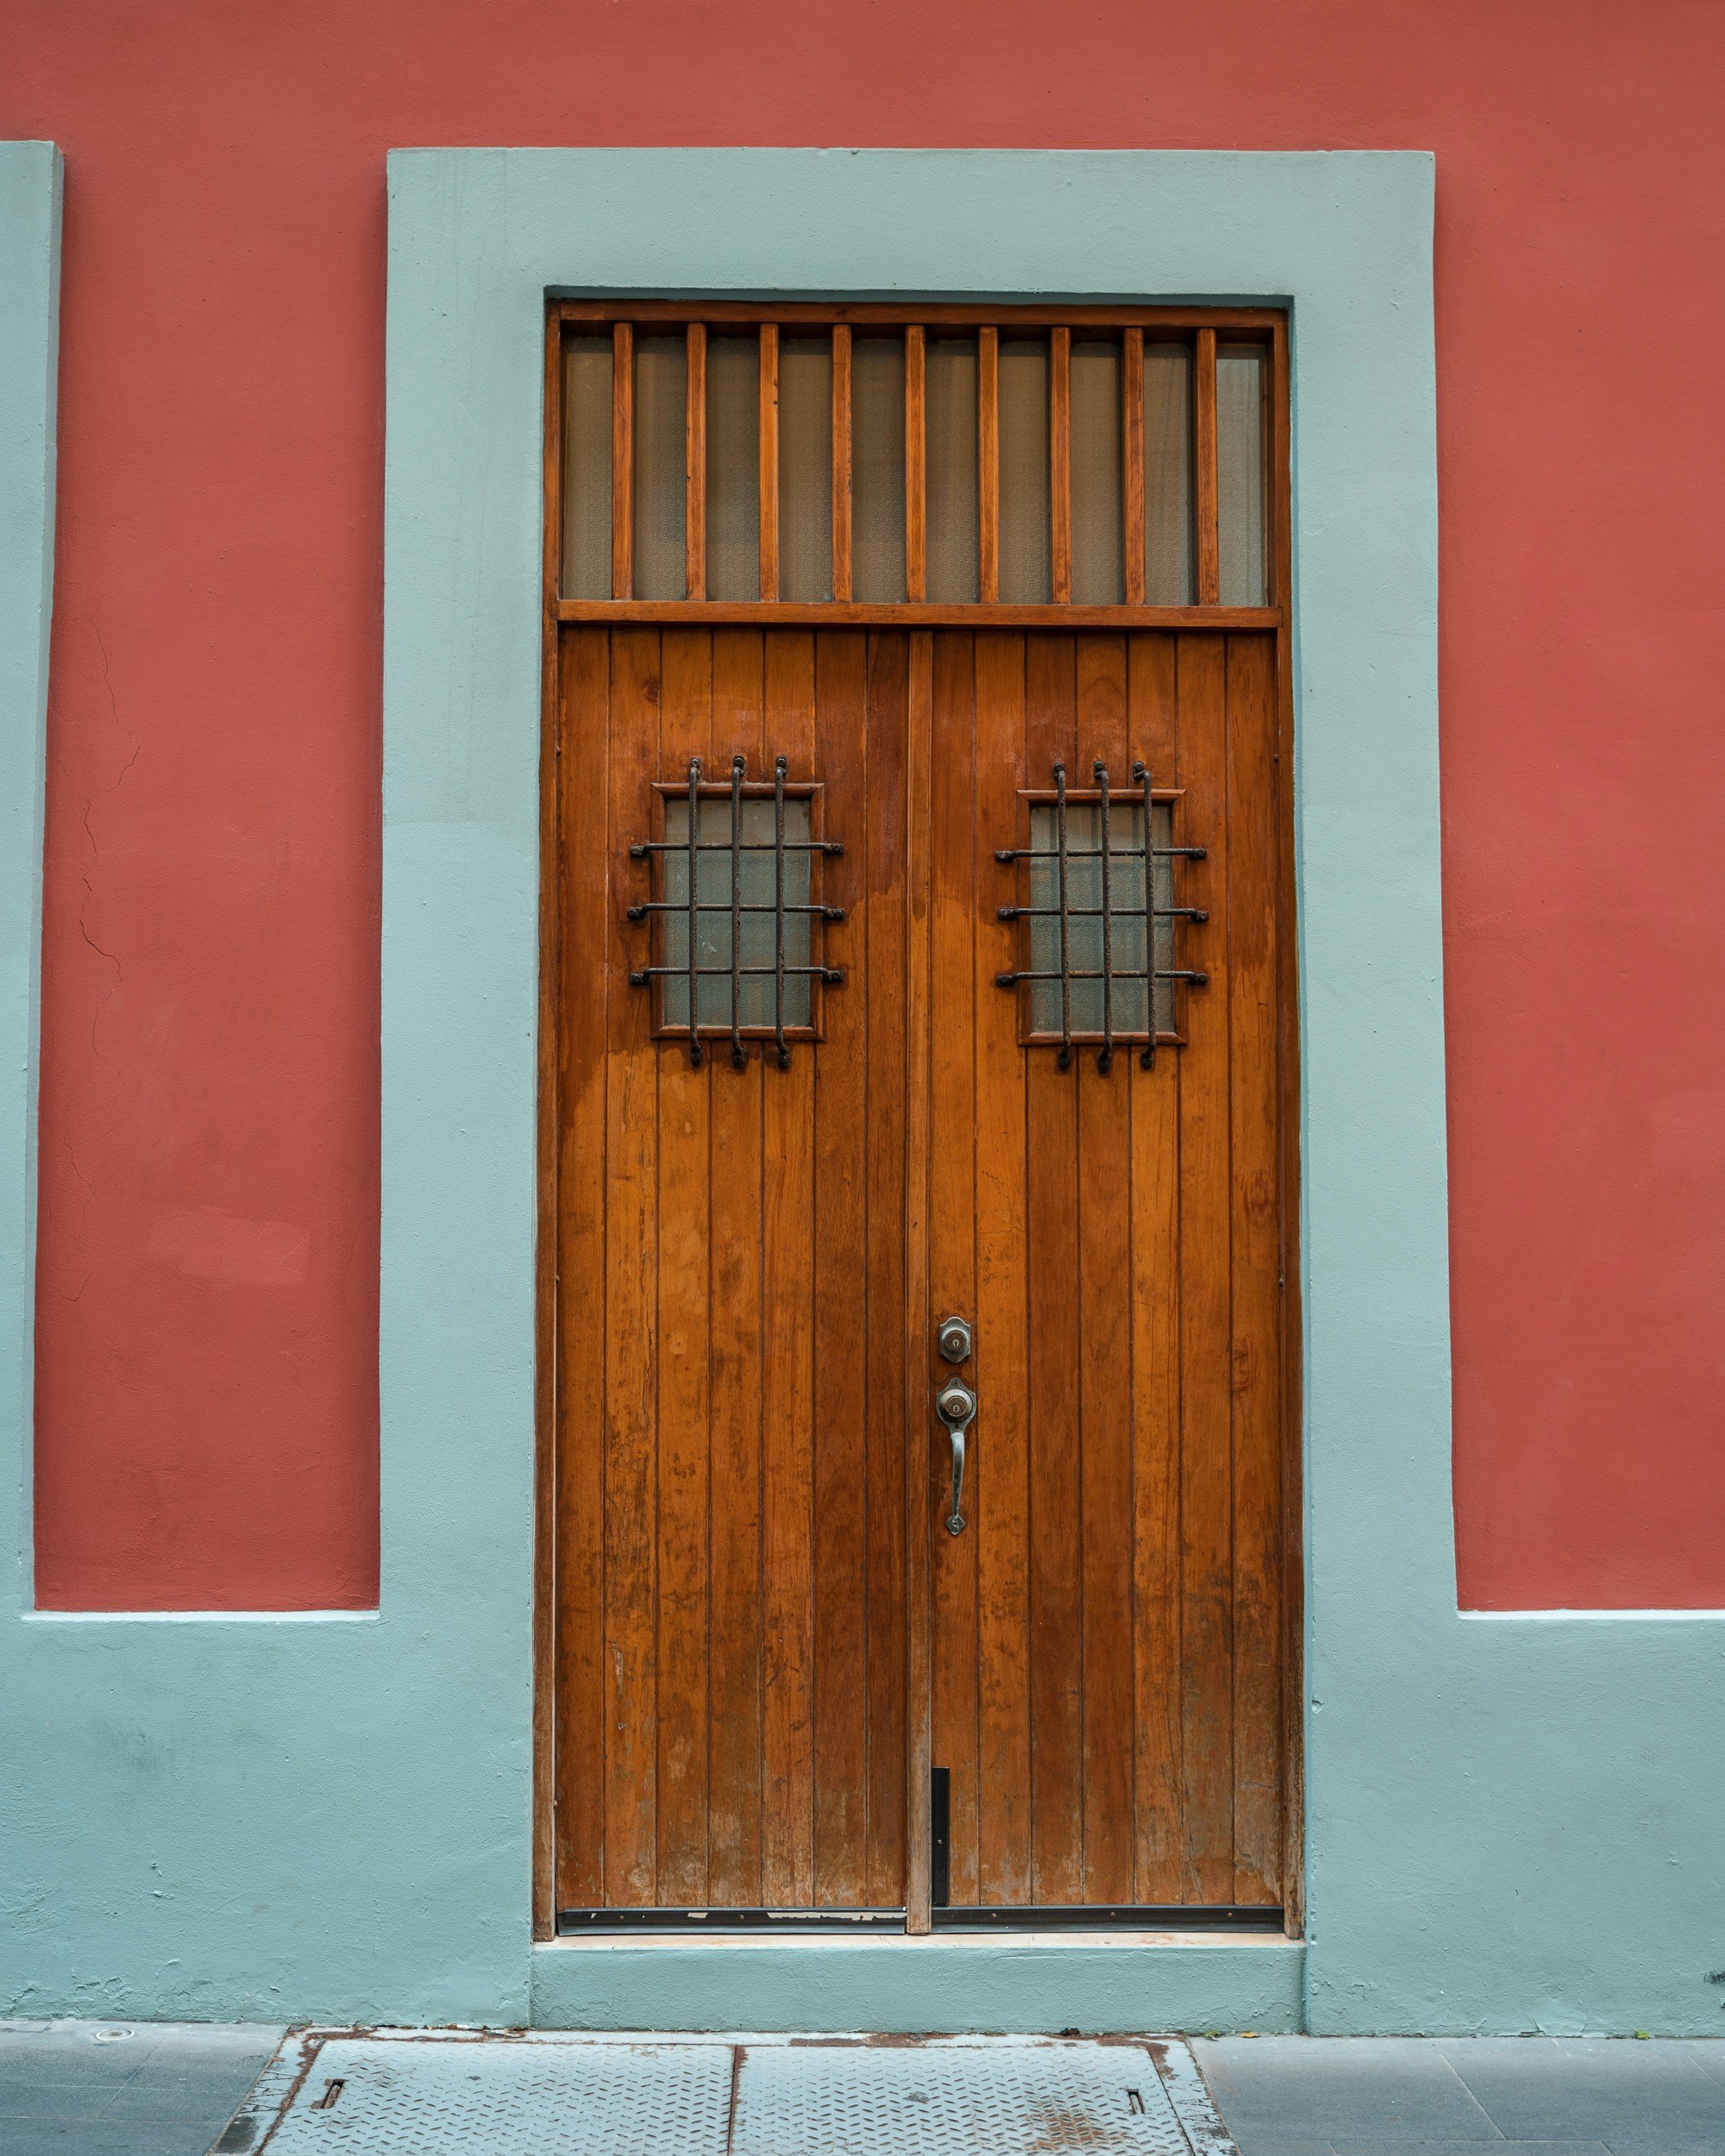 Beautiful red door in San Juan, PR